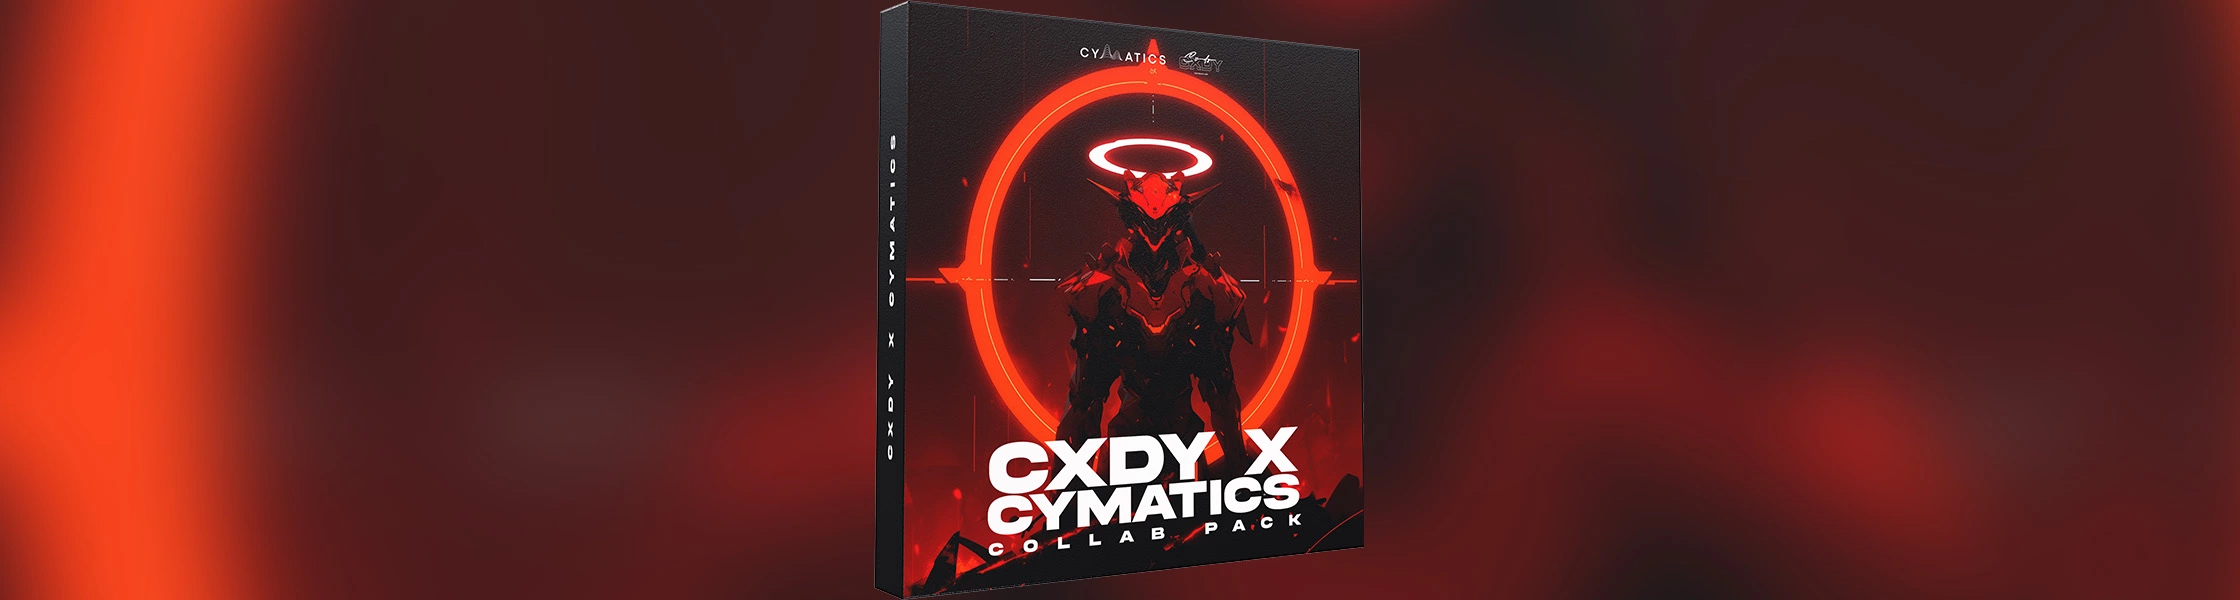 CXDY X CYMATICS